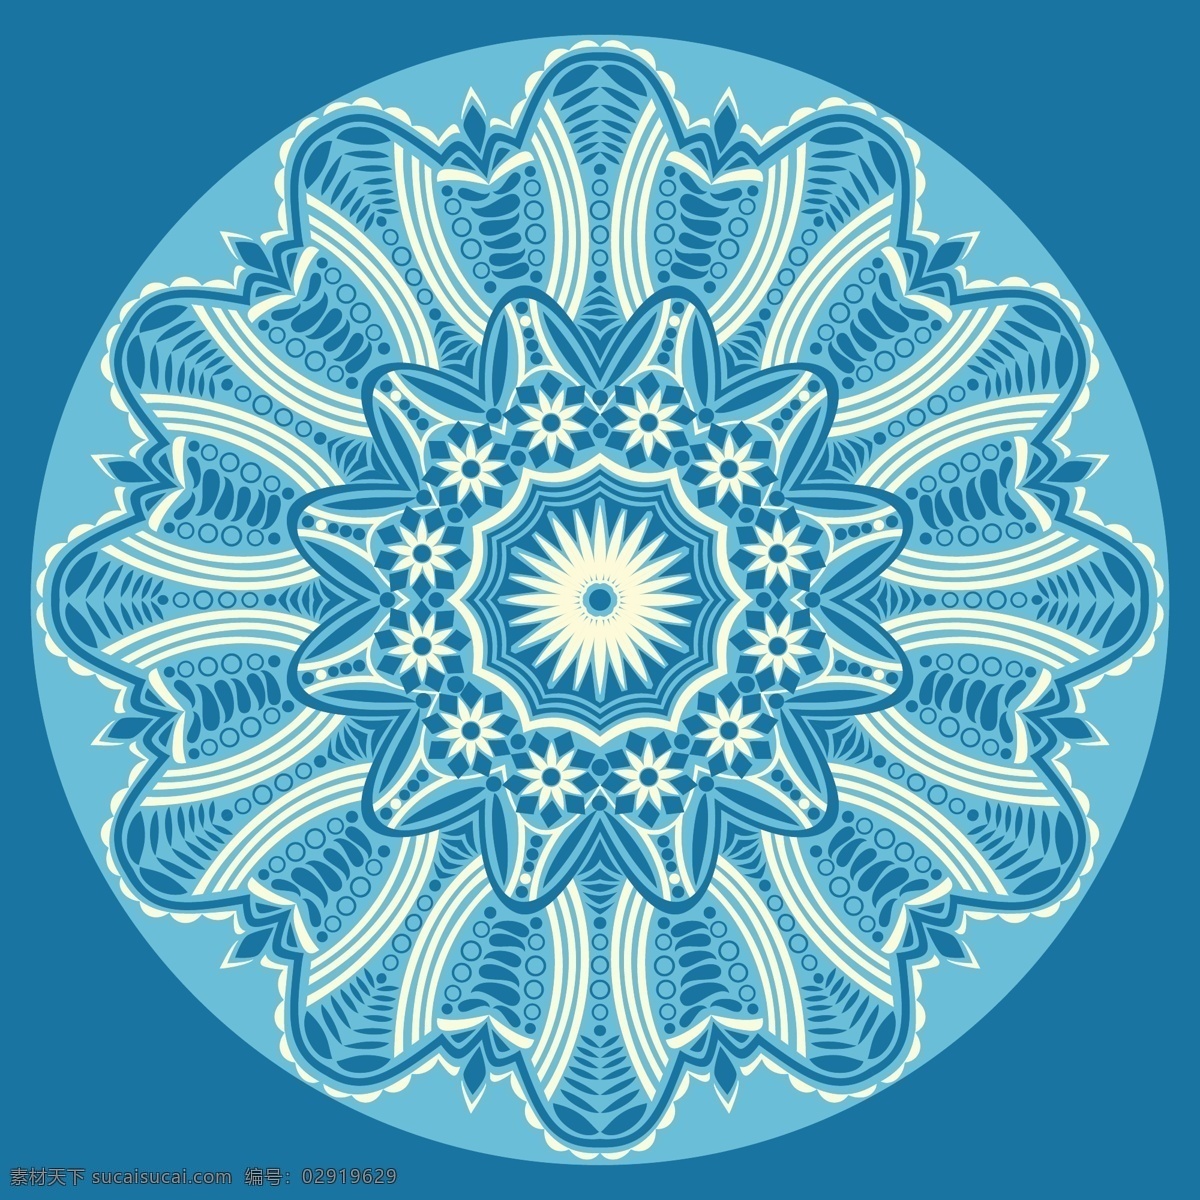 曼荼罗 背景 花 抽象 花卉 装饰 蓝色的背景 蓝色 颜色 曼陀罗 花的背景 墙纸 阿拉伯语 印度 形状 伊斯兰教 色彩 下